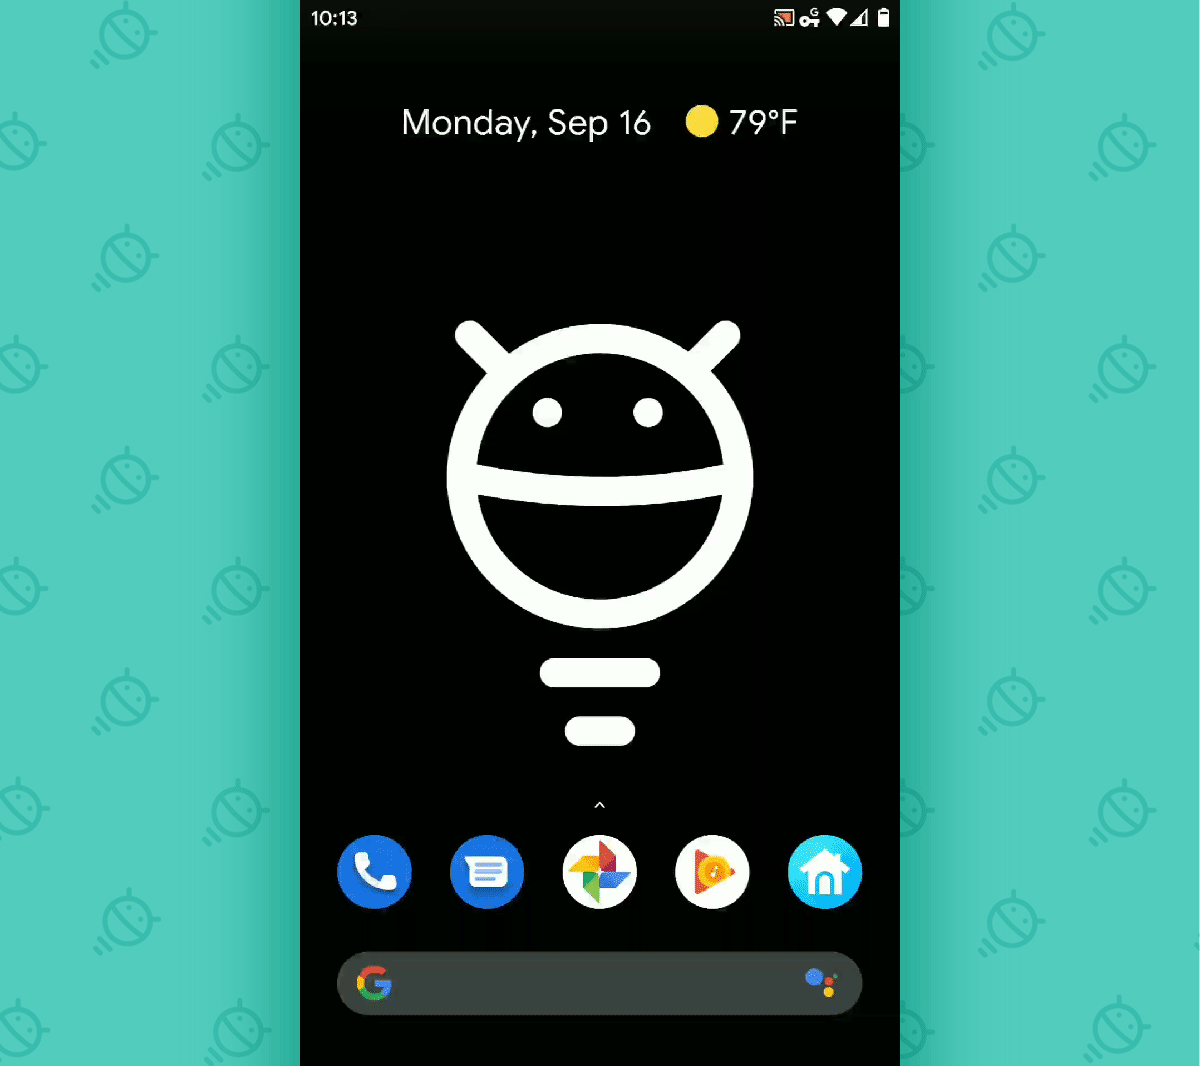 Gestos de Android 10: descripción general